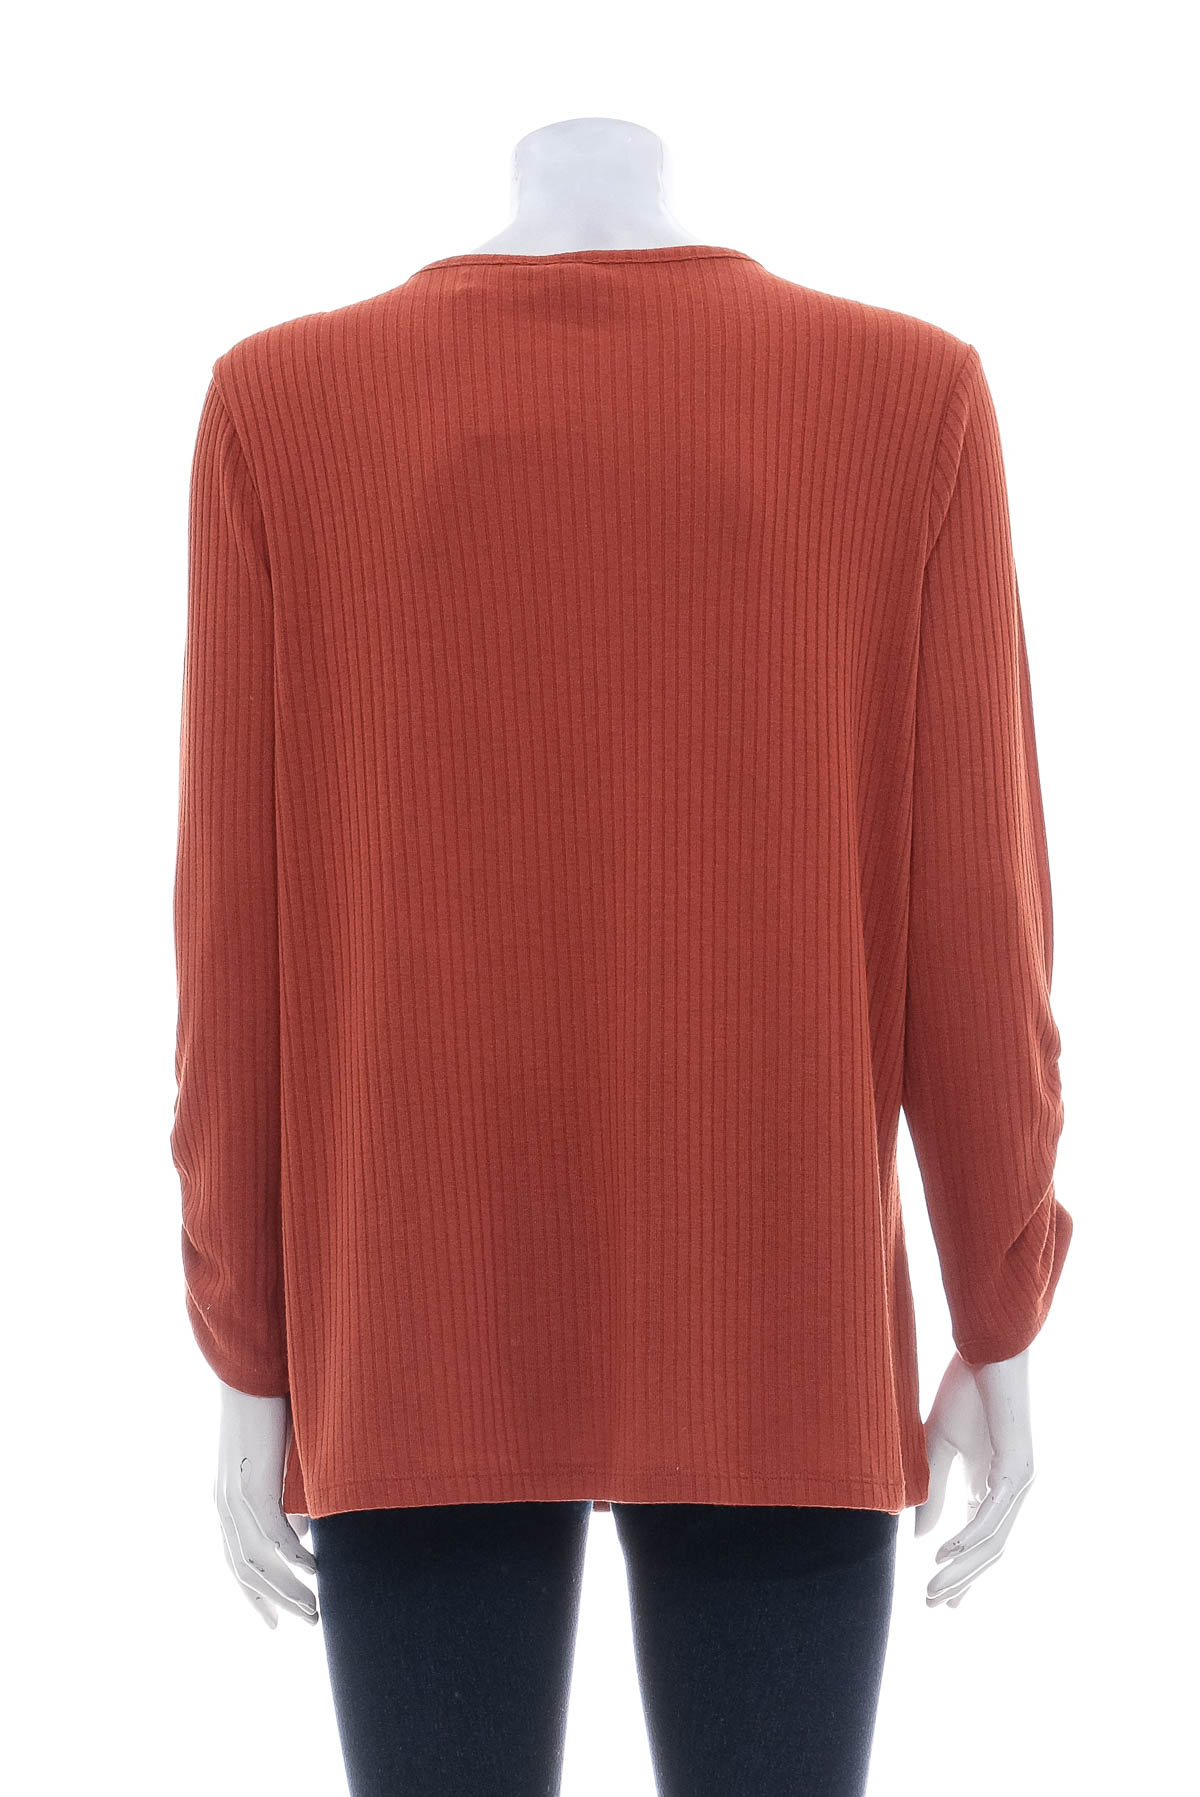 Women's sweater - EST. 1946 - 1